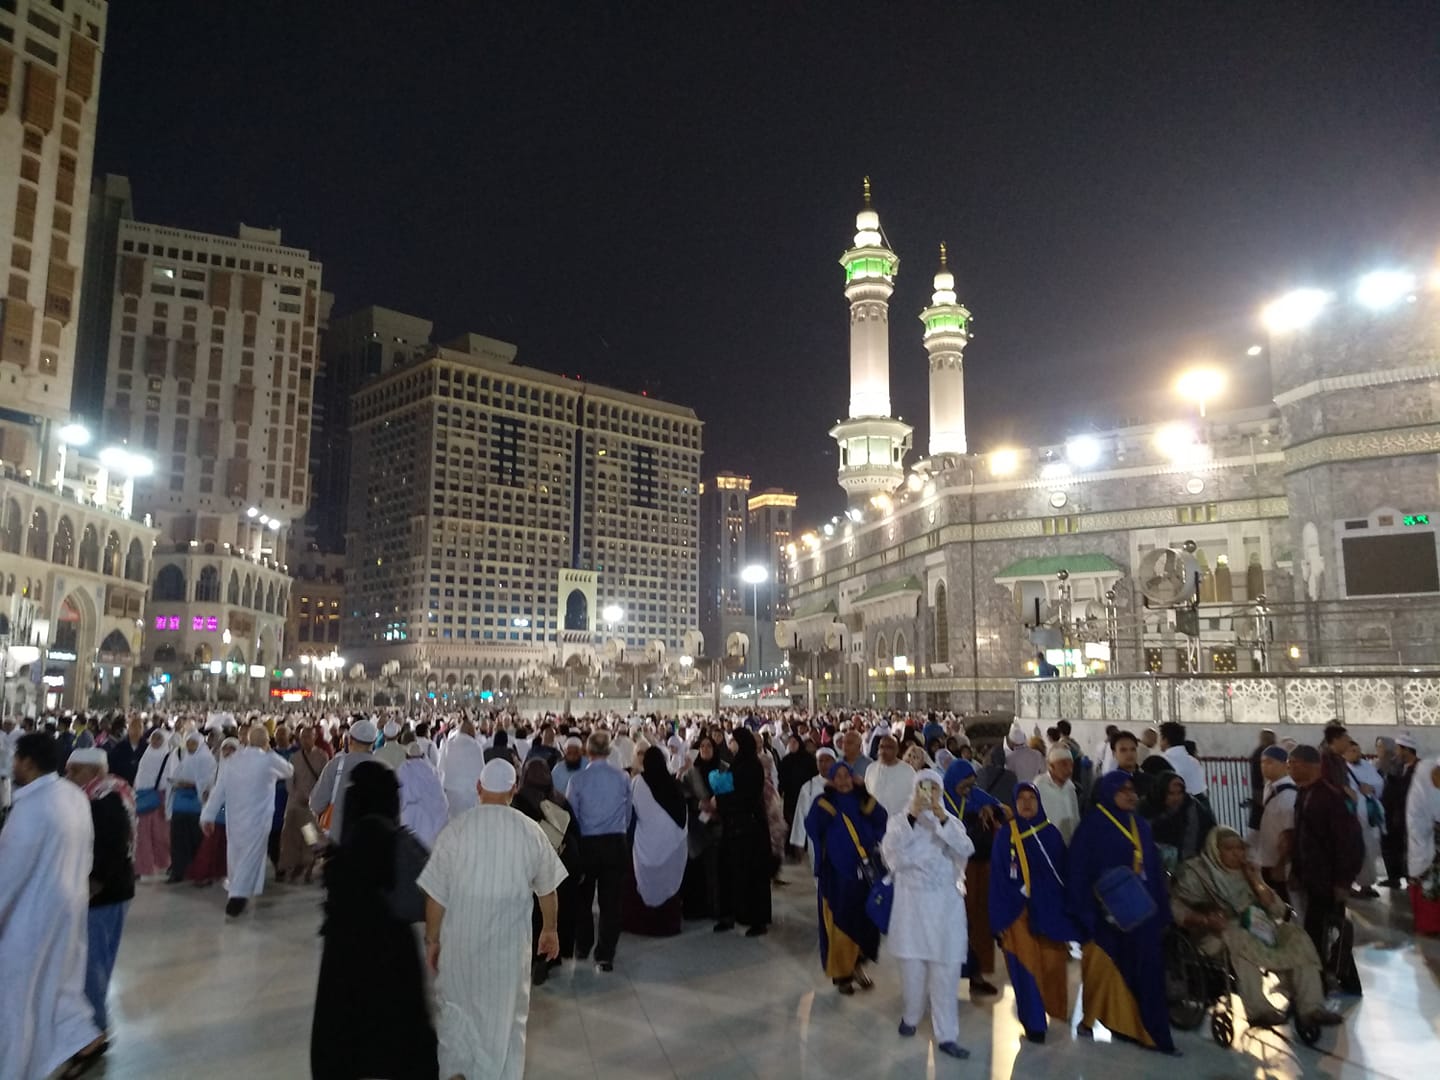 Suasana umat Islam saat umrah di Masjidil Haram, Makkah. (Foto: Istimewa)